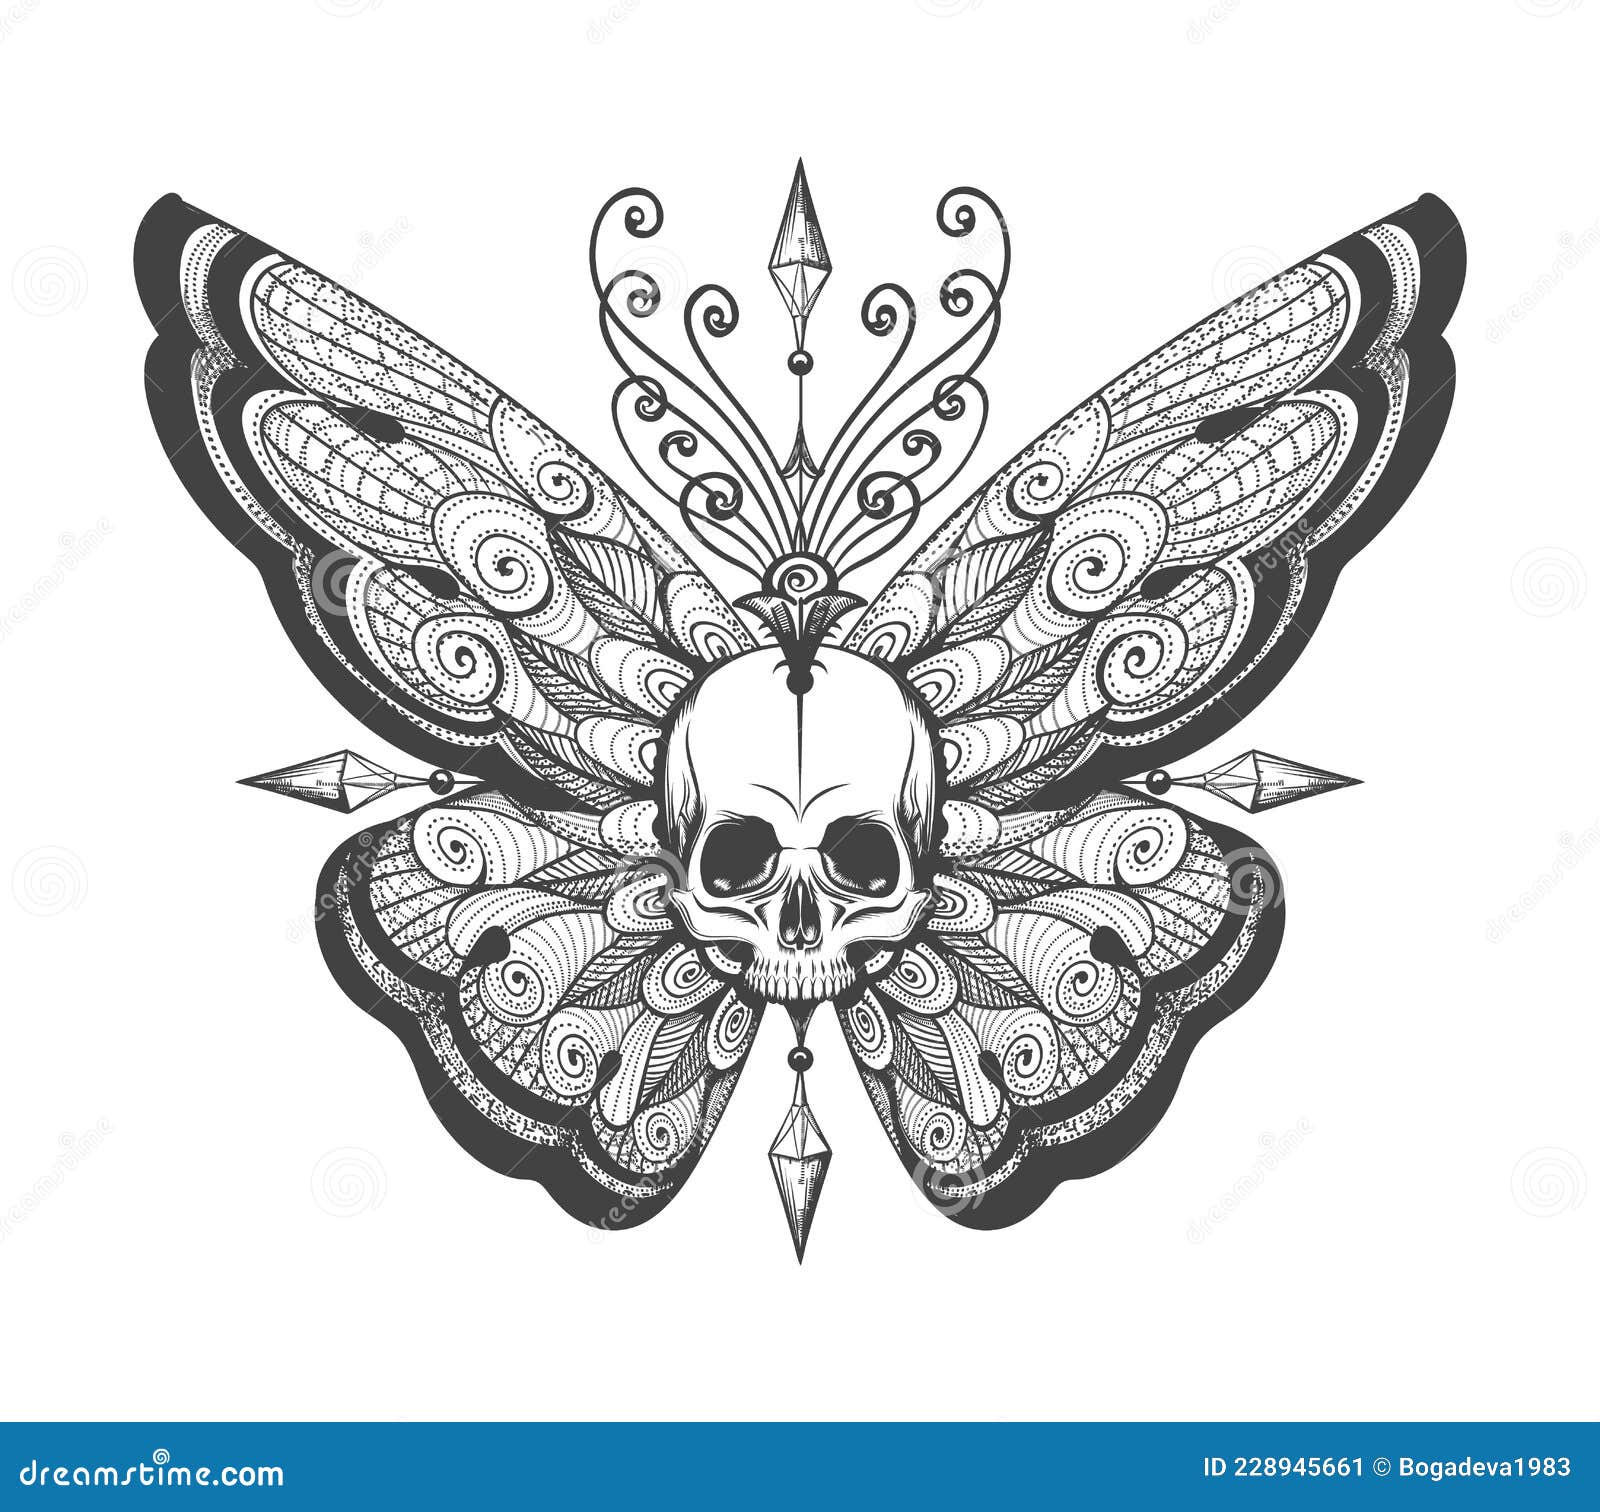 InkoTattoo  Temporary Tattoo  Skull  Rose  Butterfly Skull  INKOTATTOO